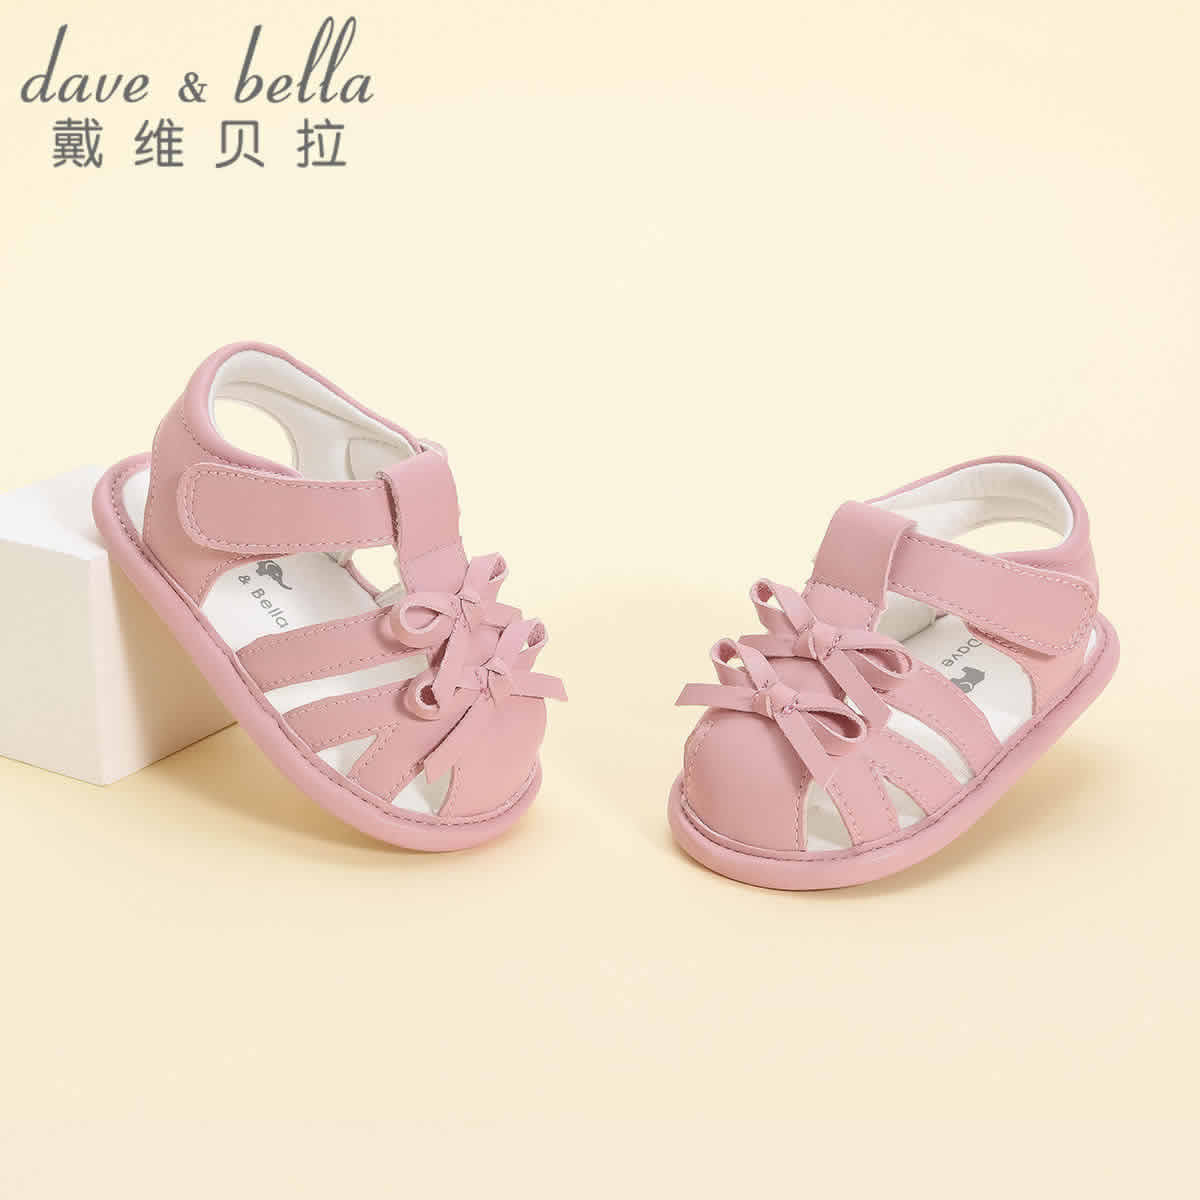 戴维贝拉 婴儿学步凉鞋 